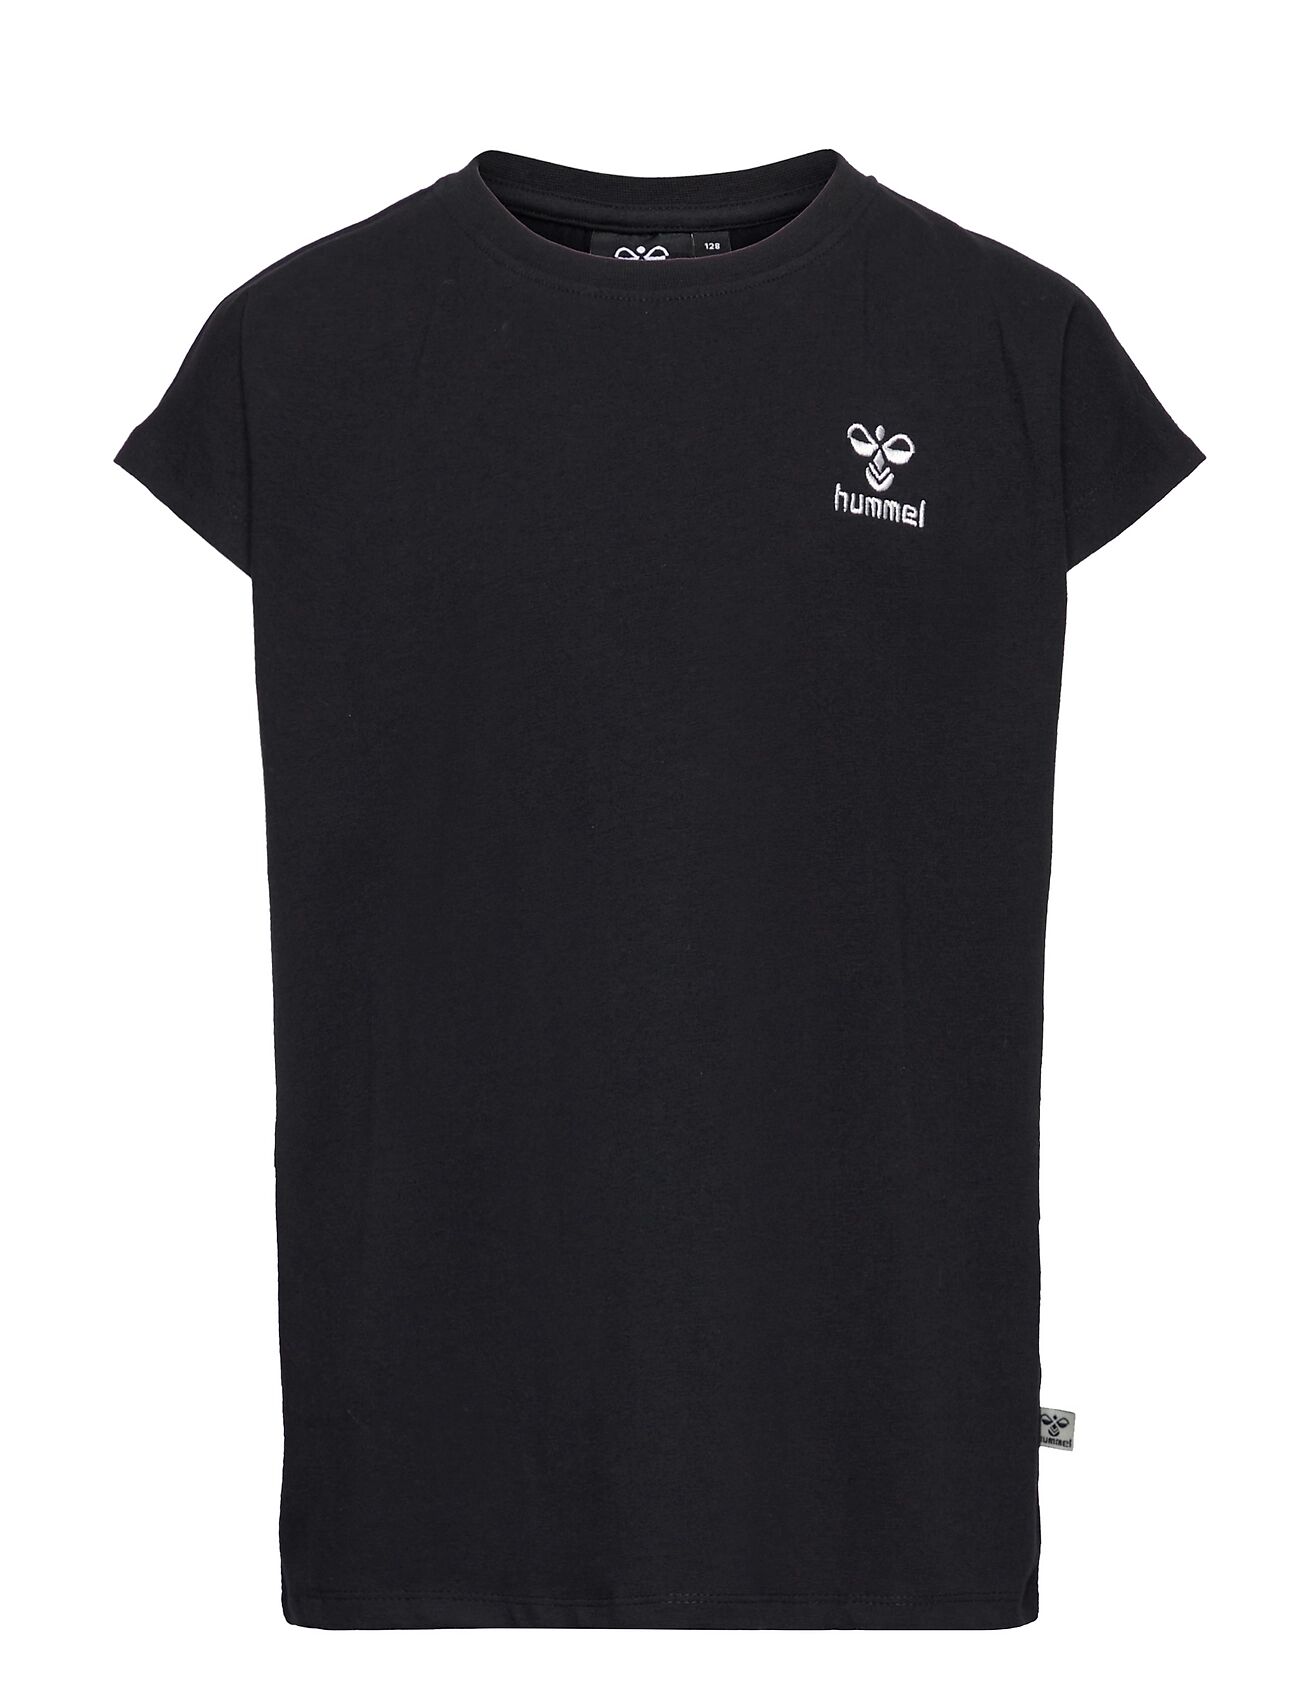 Hummel Hmldoce T-Shirt S/S T-shirts Short-sleeved Svart Hummel